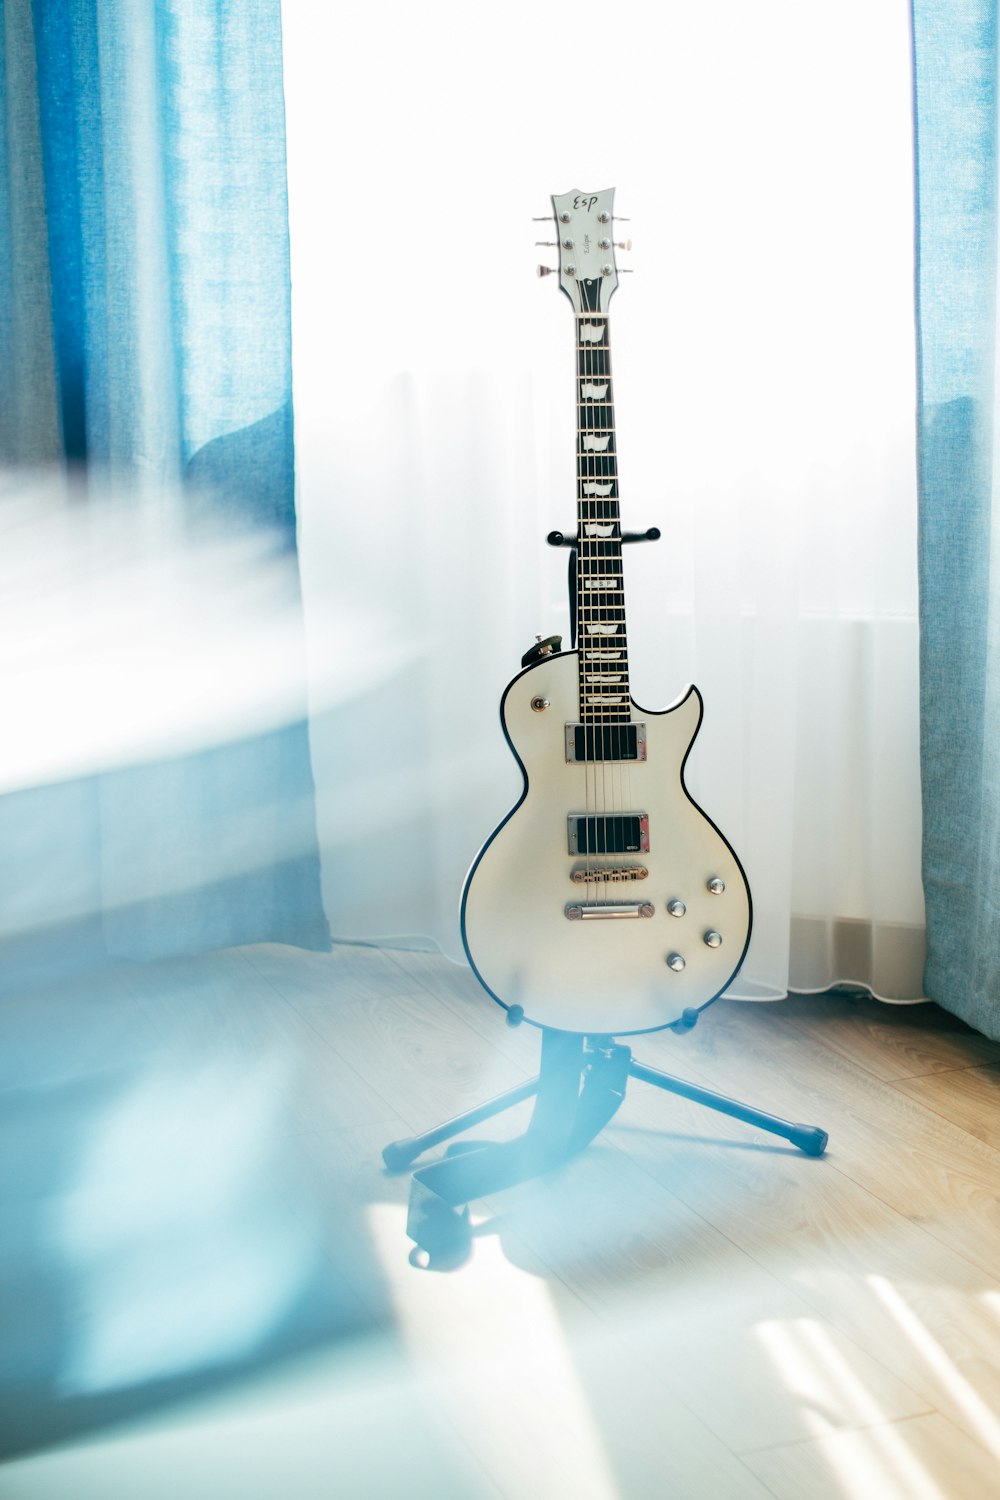 스탠드가 있는 흰색 Les Paul 기타